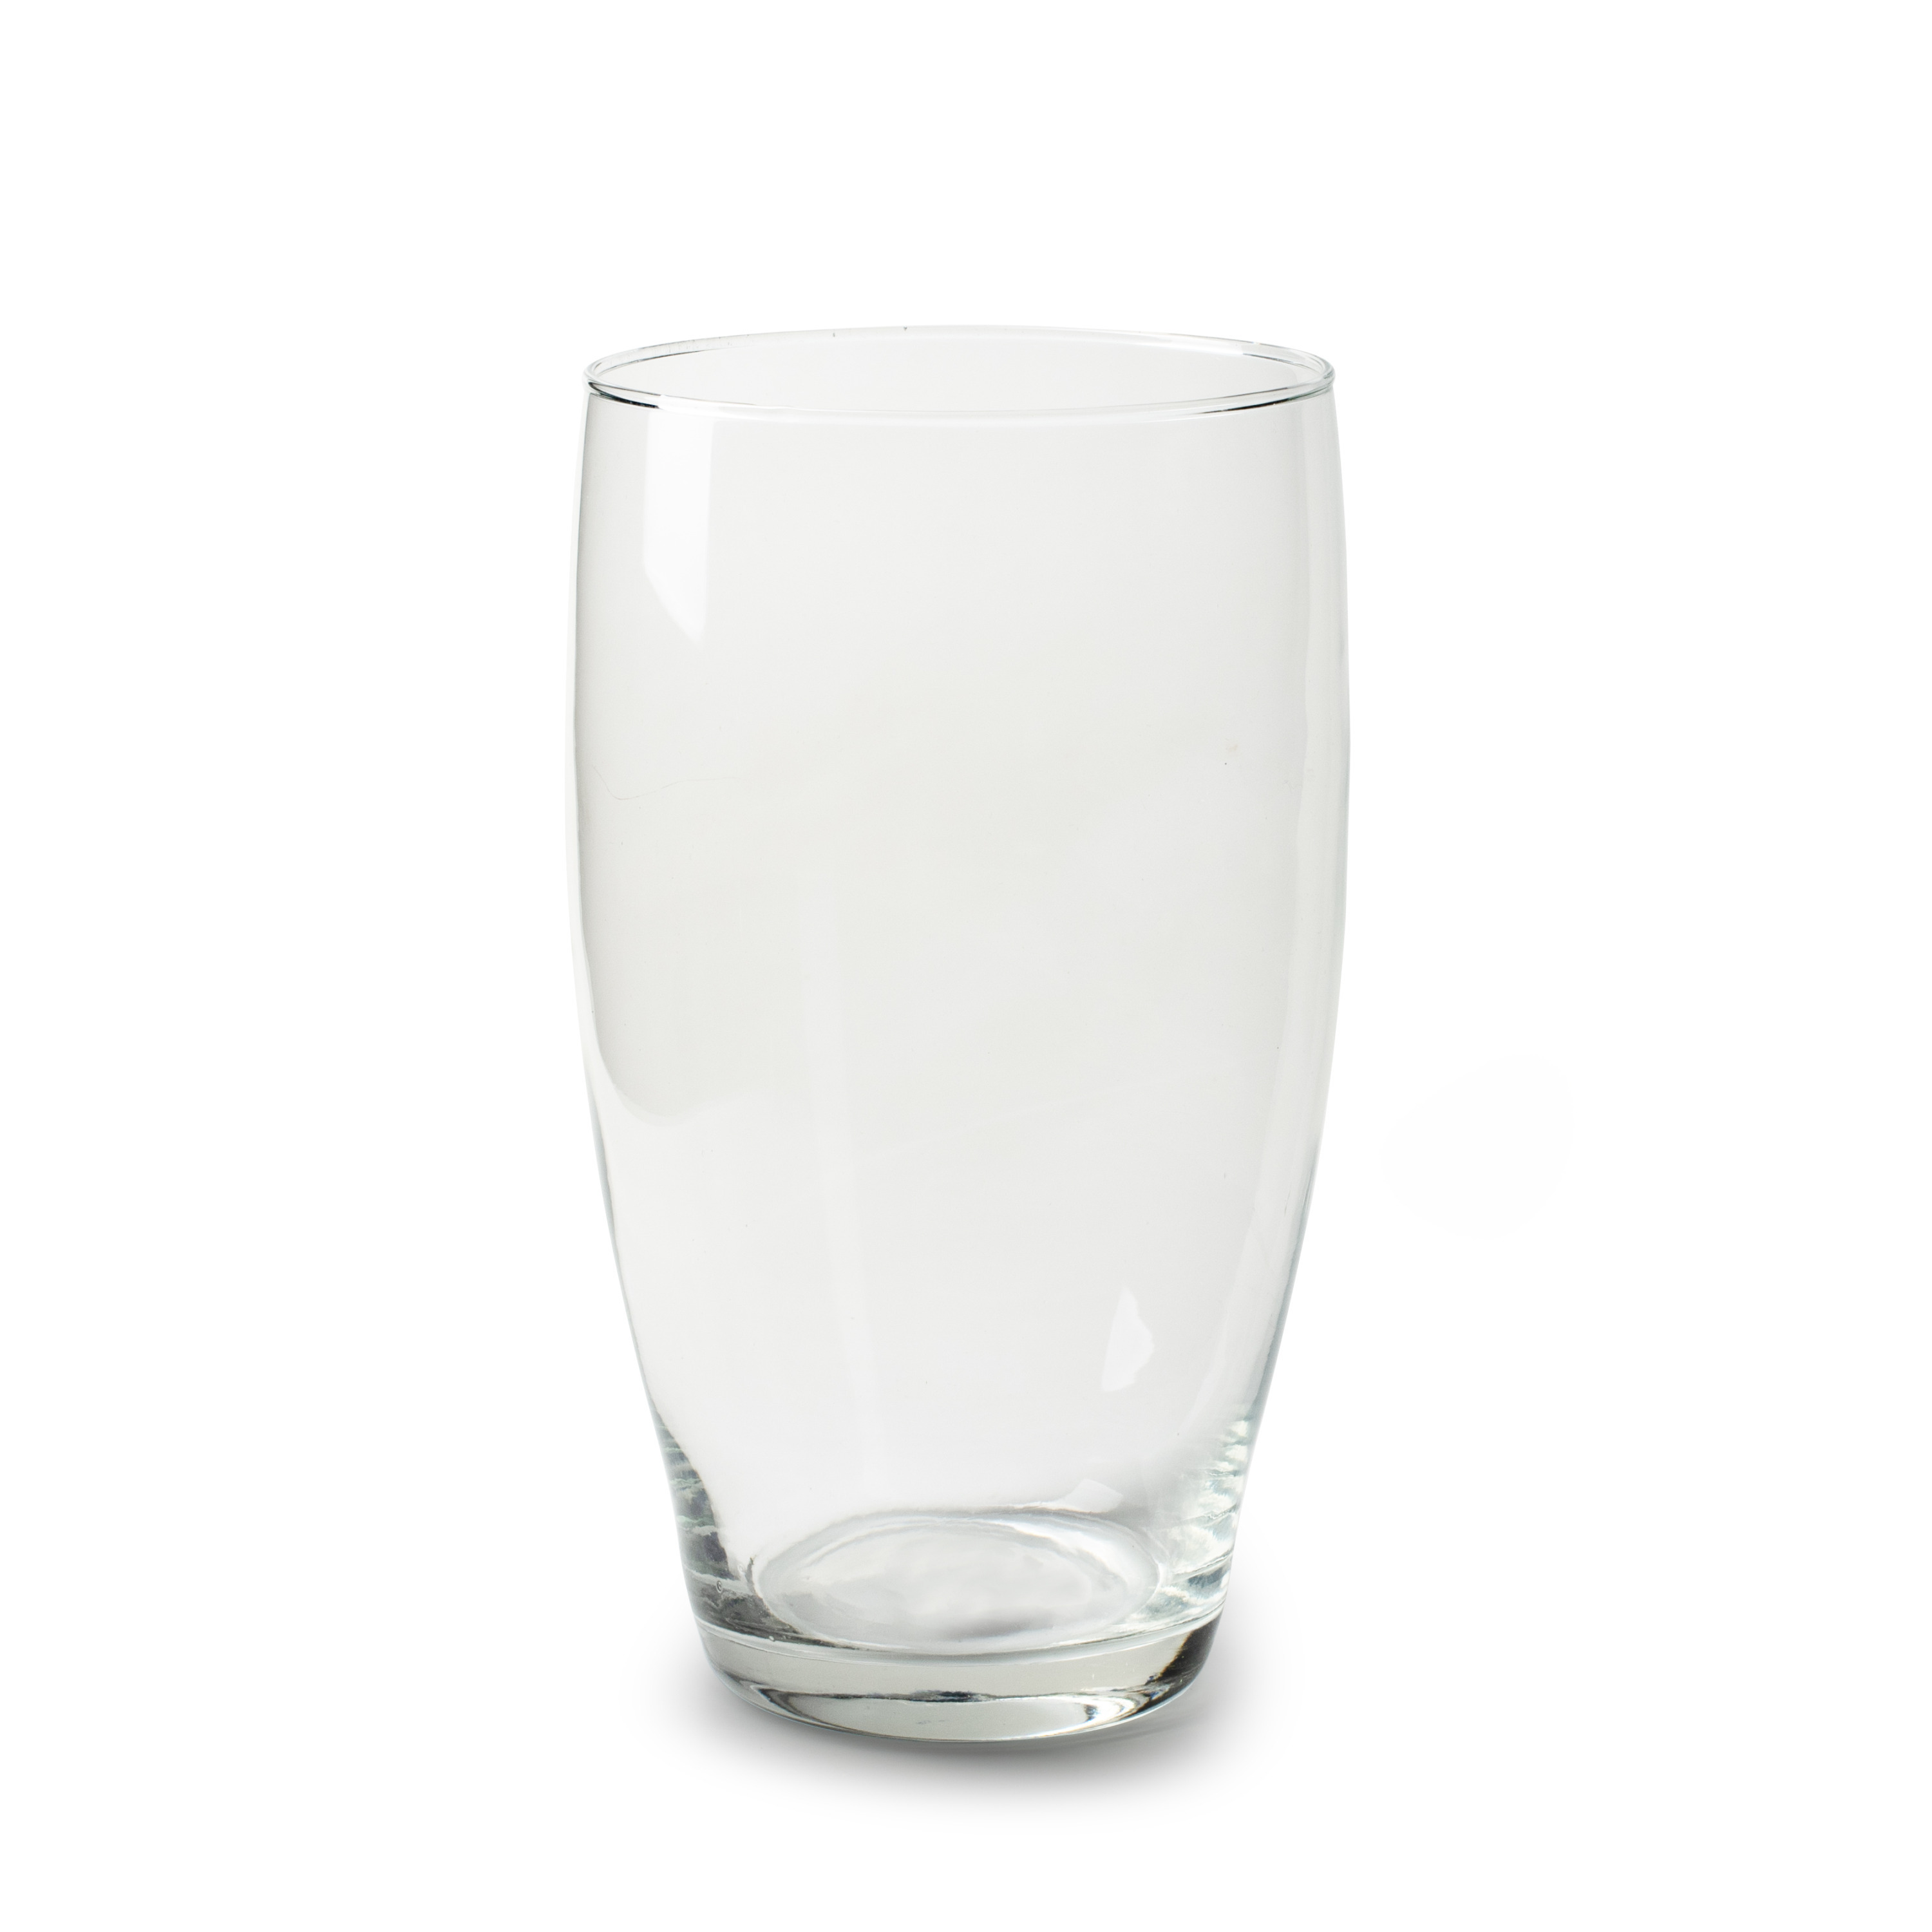 Jodeco Bloemenvaas Pasa - helder transparant - glas - D14 x H25 cm - klassieke vorm vaas -